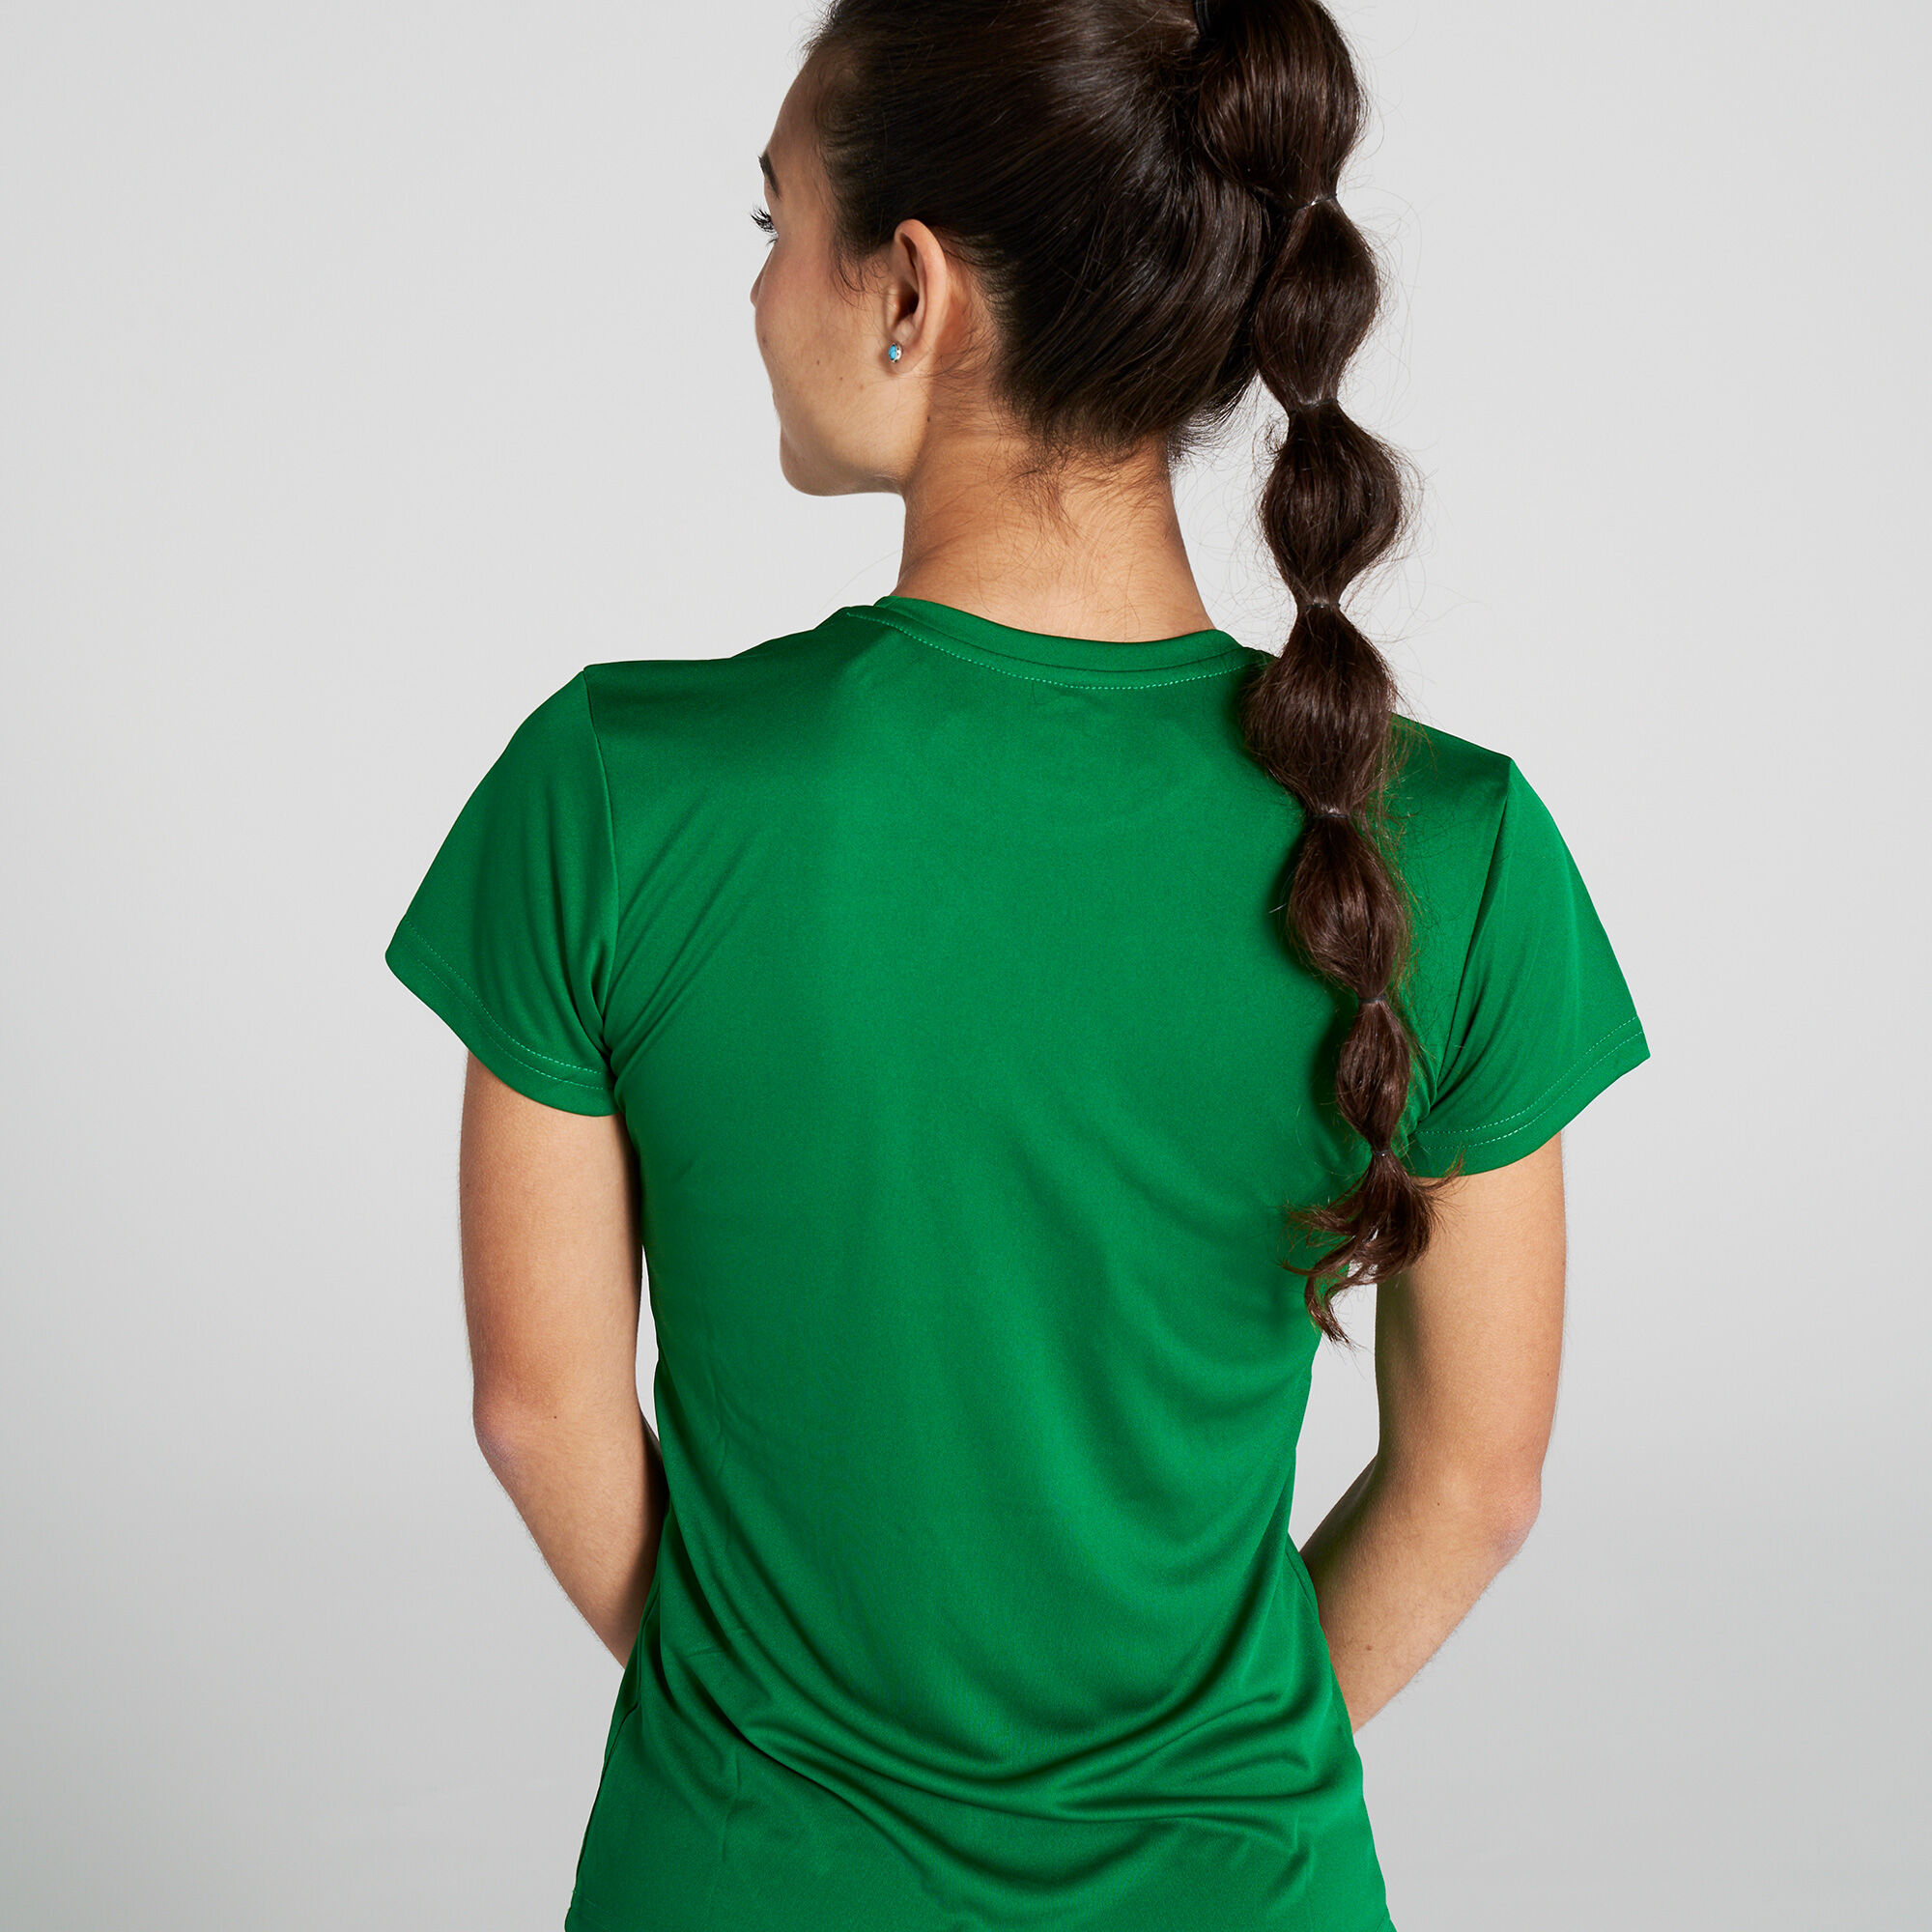 Camiseta manga corta mujer Combi verde